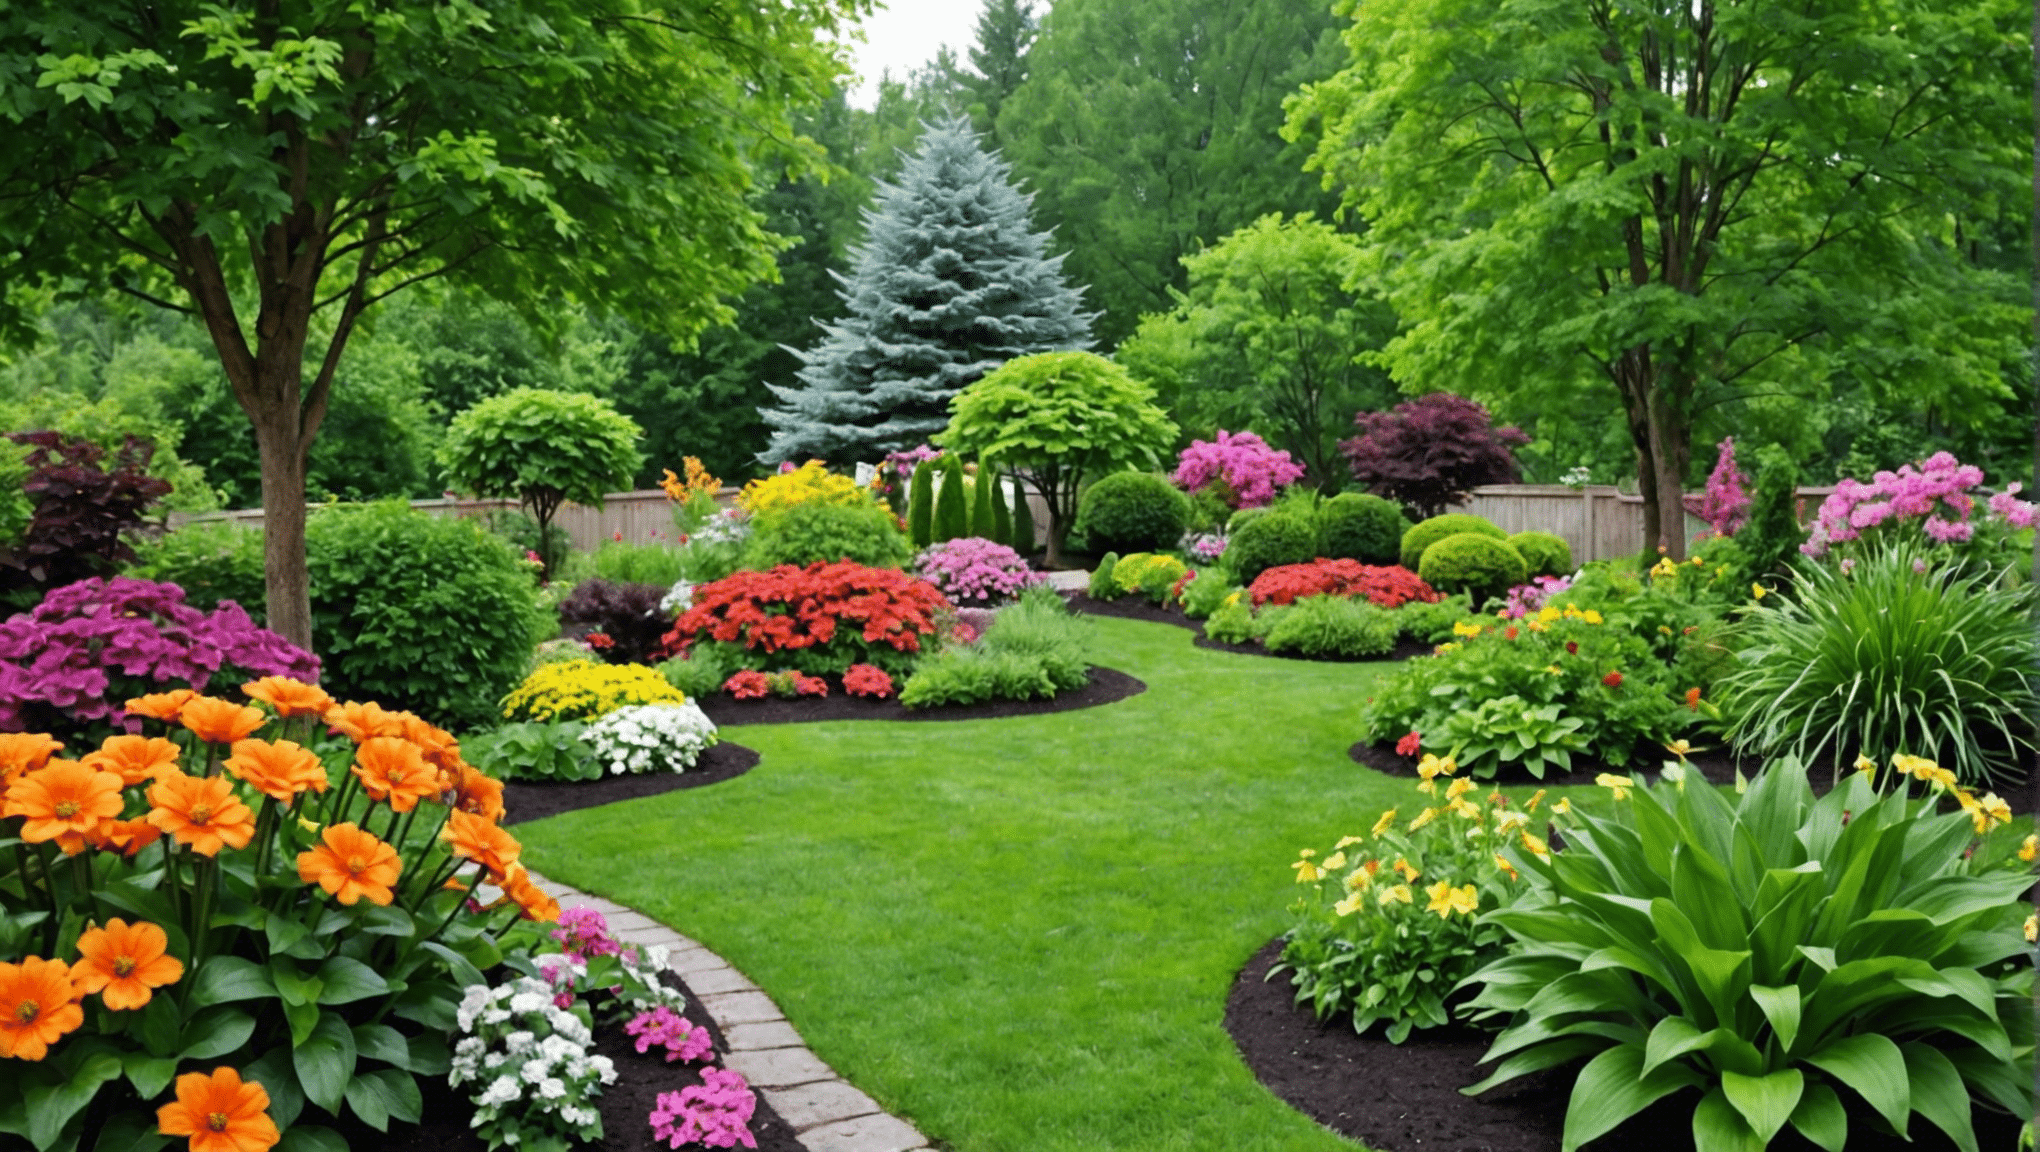 opdag et bredt udvalg af havefrø af høj kvalitet til din episke have. bring din have til live med vores førsteklasses frøkollektion.